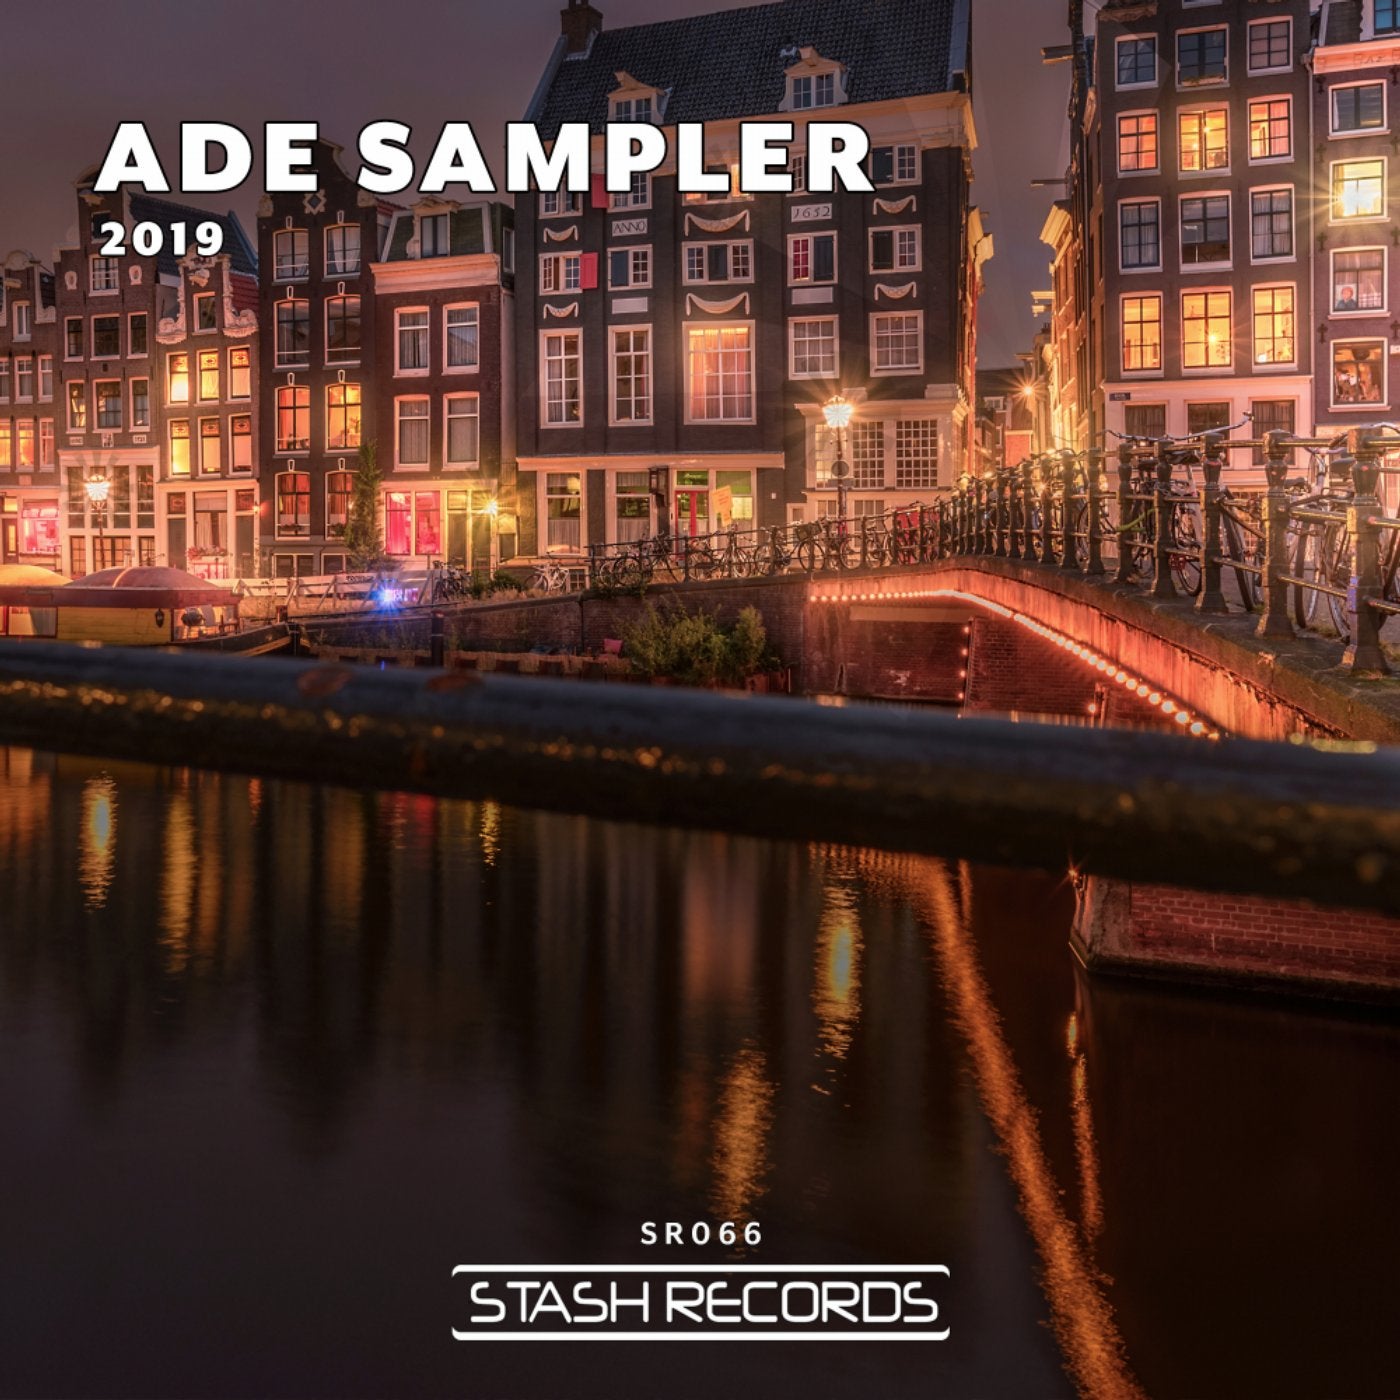 ADE Sampler 2019